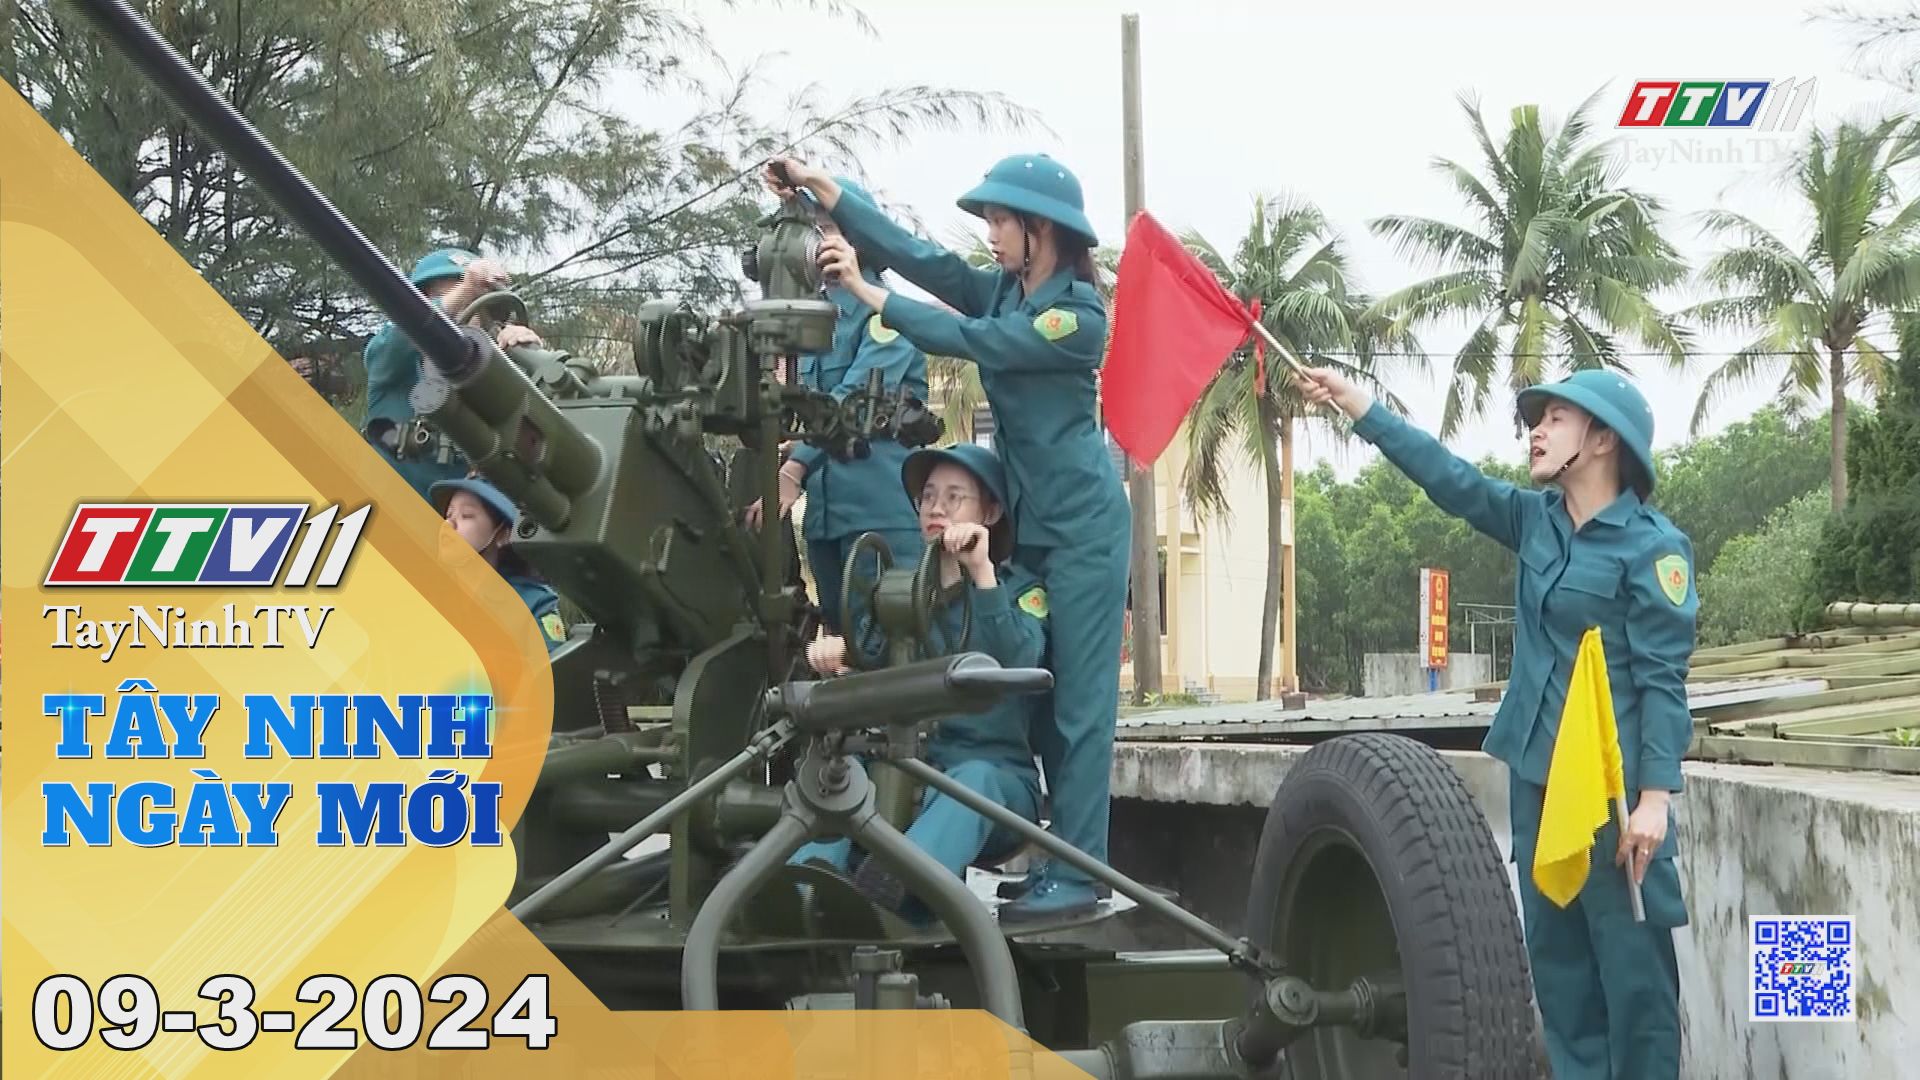 Tây Ninh ngày mới 09-3-2024 | Tin tức hôm nay | TayNinhTV